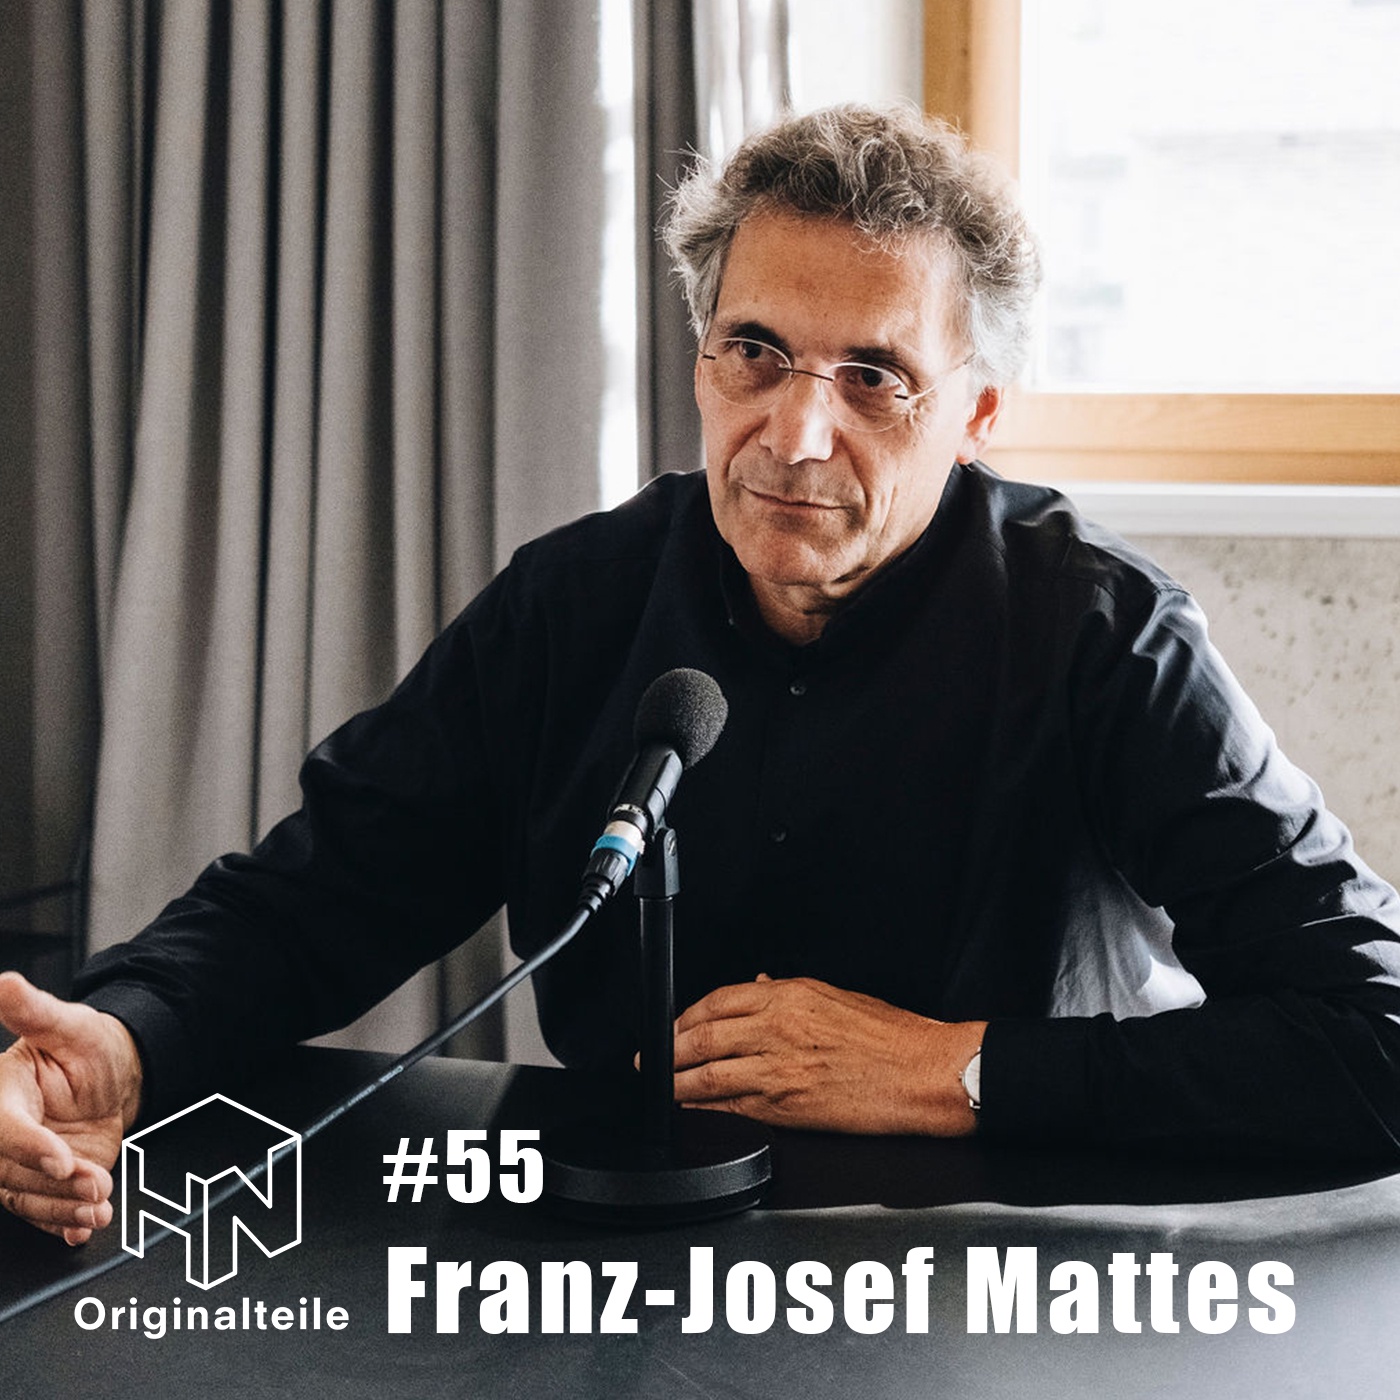 Originalteile-Podcast - Folge #55 mit Franz-Josef Mattes (Architekt)